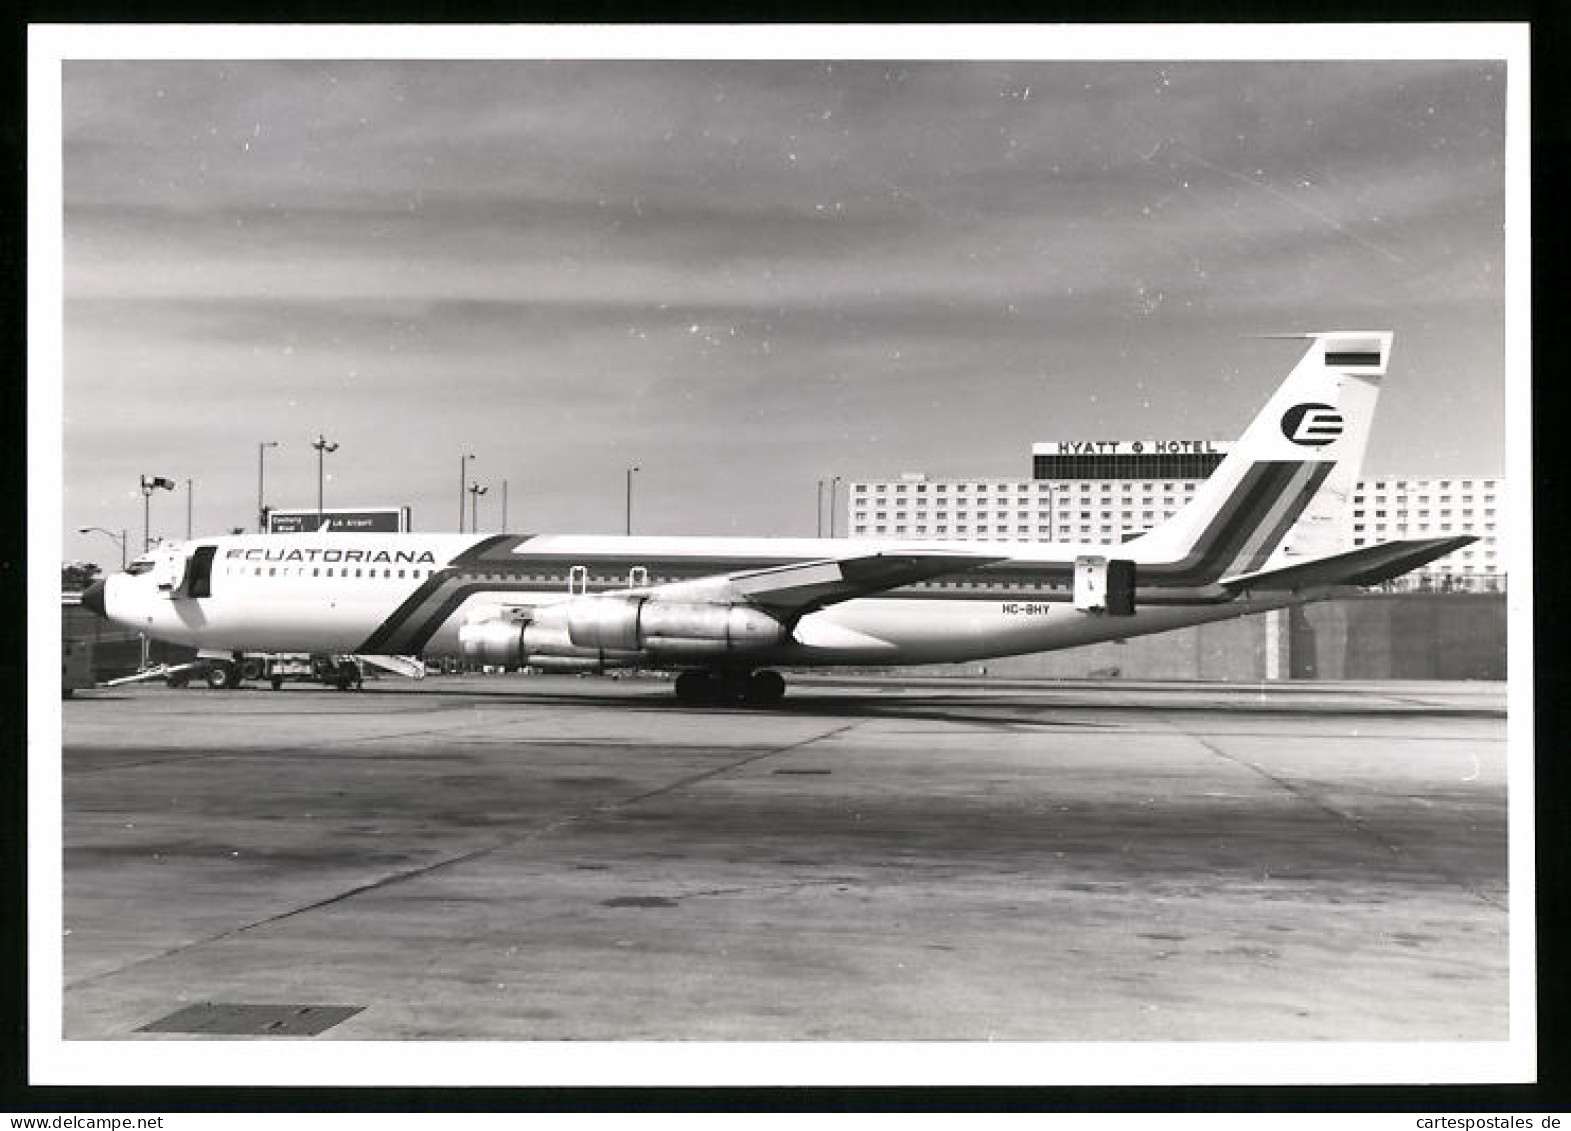 Fotografie Flughafen Los Angeles, Flugzeug Boeing 707, Passagierflugzeug Der Ecuatoriana, Kennung HC-BHY  - Luftfahrt